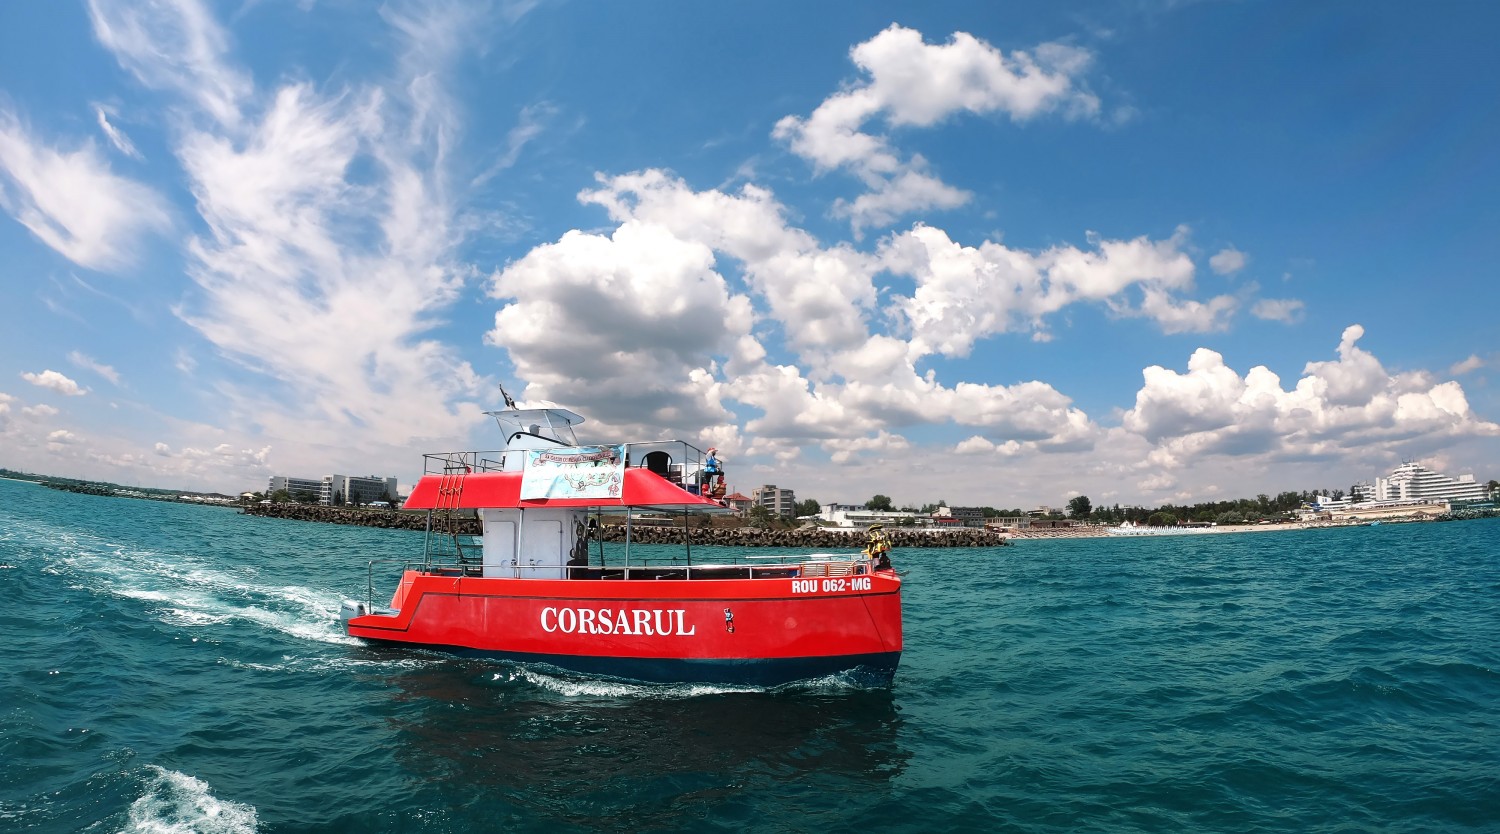 home delivery brand name Distribution Plimbări pe mare cu "Corsarul" din Portul Turistic Mangalia | BookTes